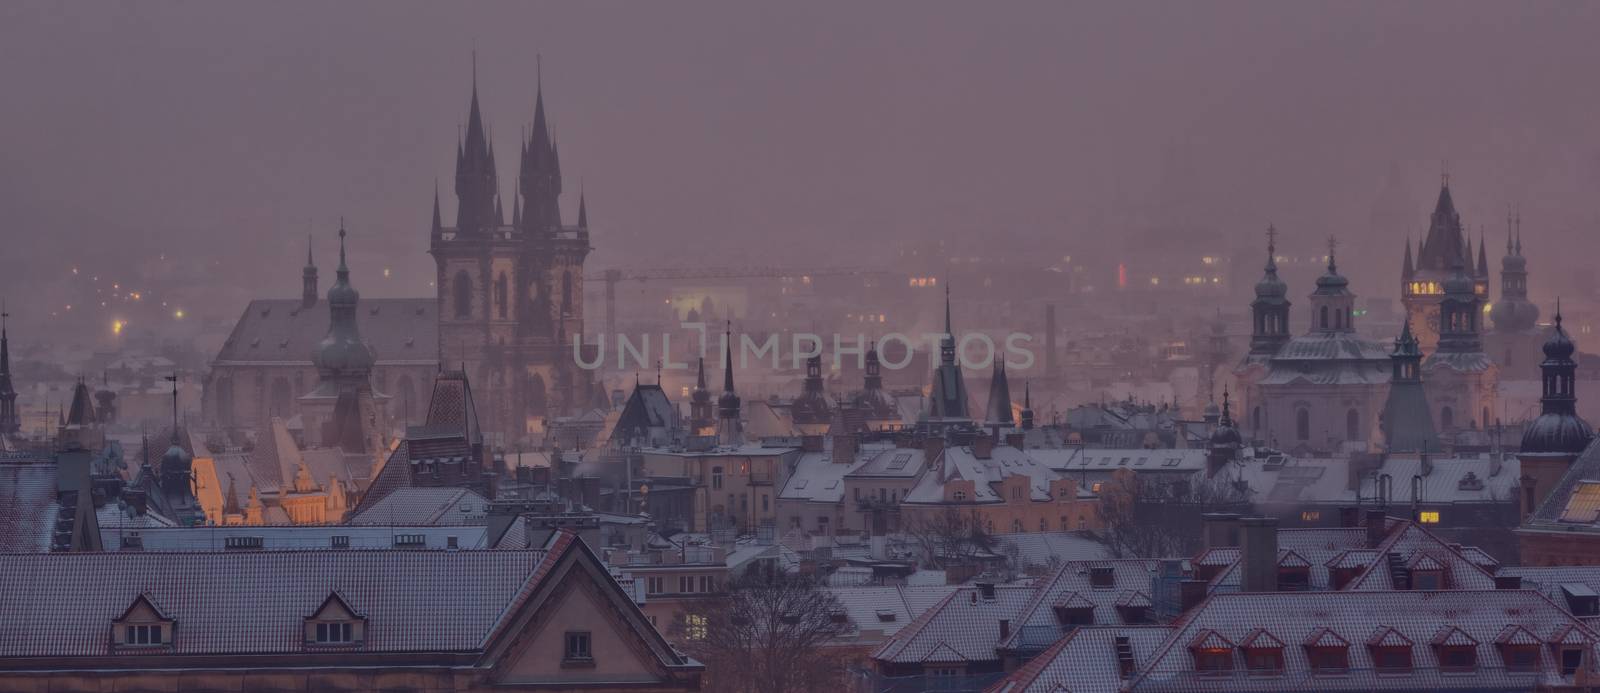 Prague towers after sunset in winter, Czech Republic